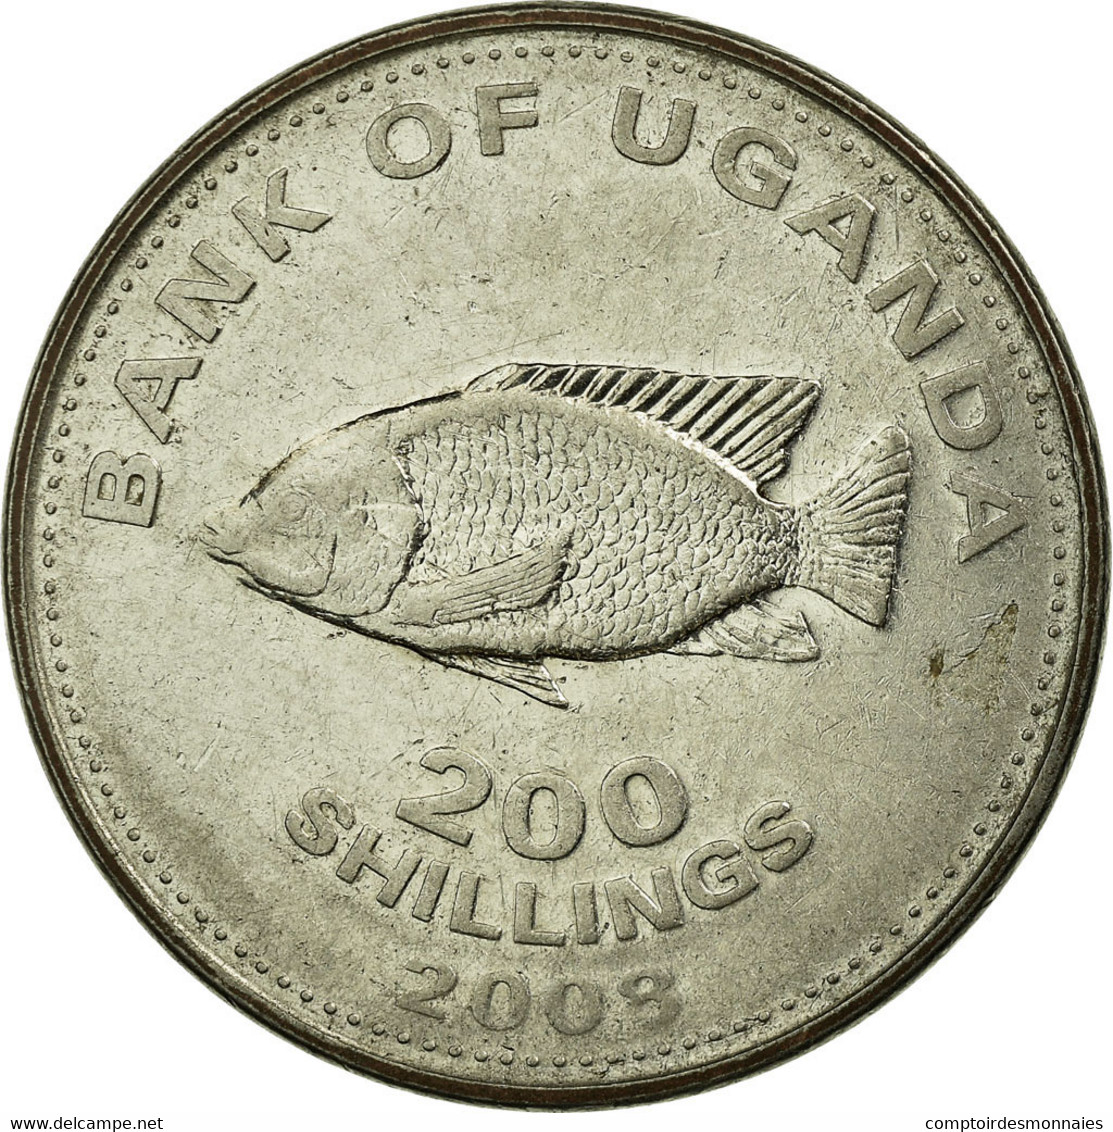 Monnaie, Uganda, 200 Shillings, 2008, TB+, Nickel Plated Steel, KM:68a - Oeganda